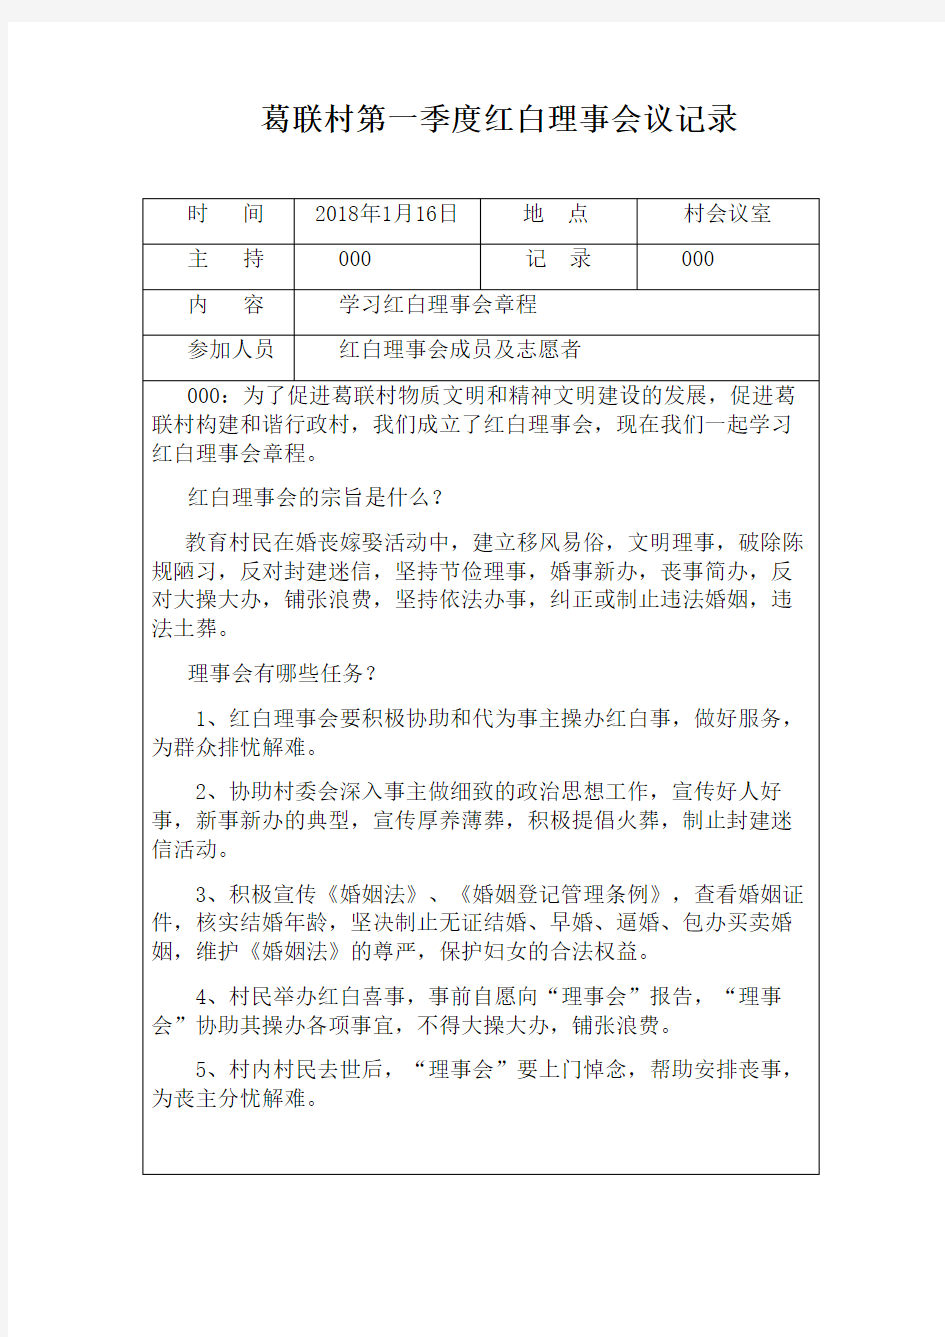 葛联村红白理事会会议记录表